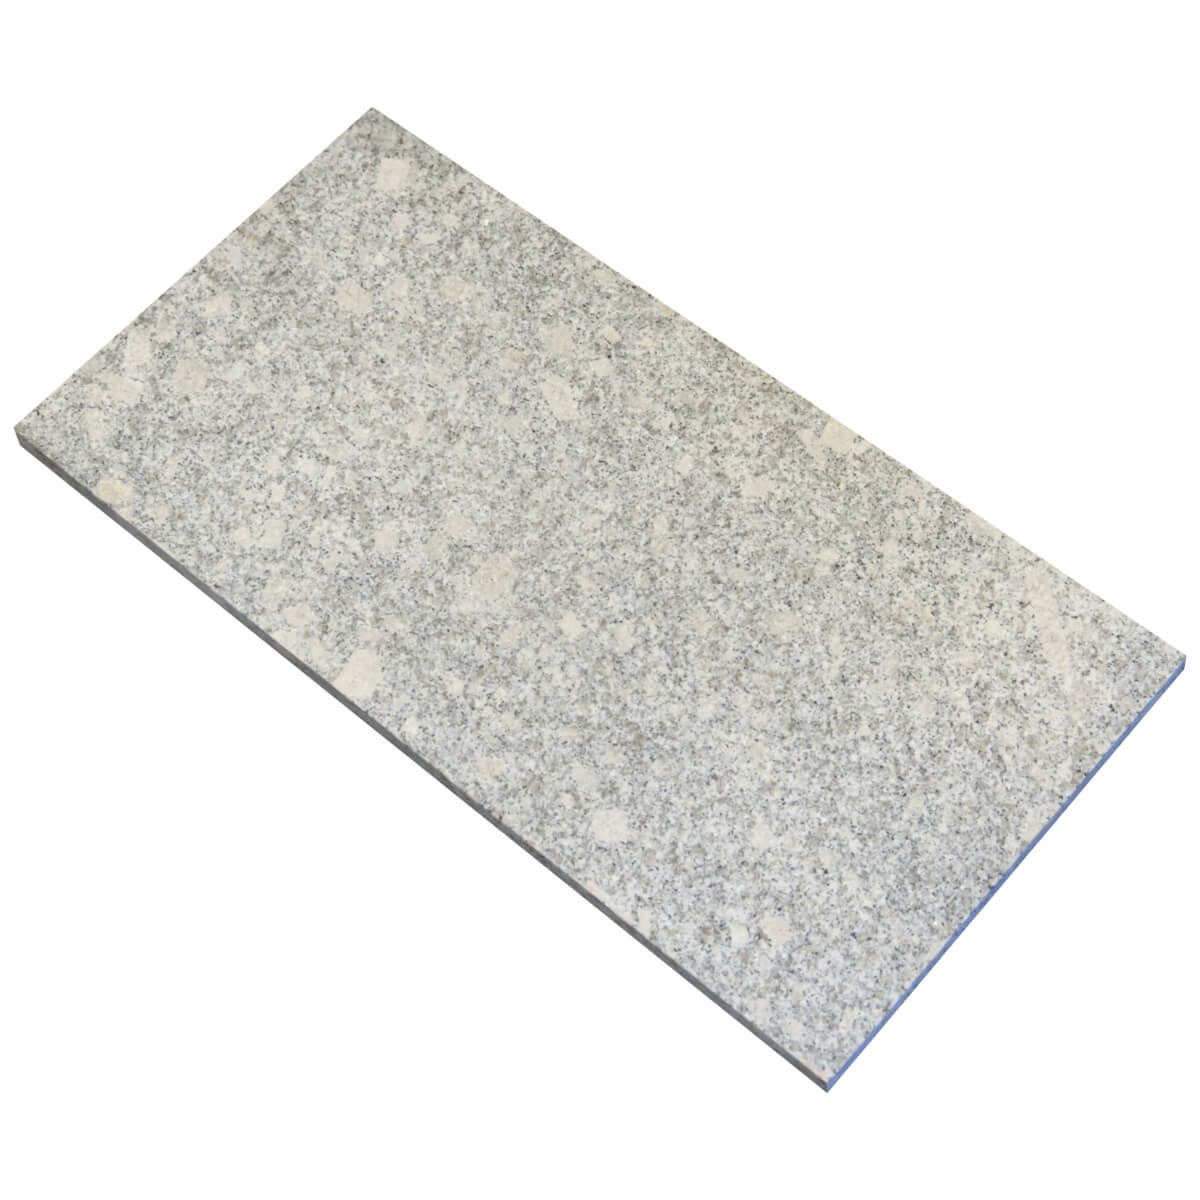 Płytki Granit G602 NEW płomieniowany 60x30x3 cm